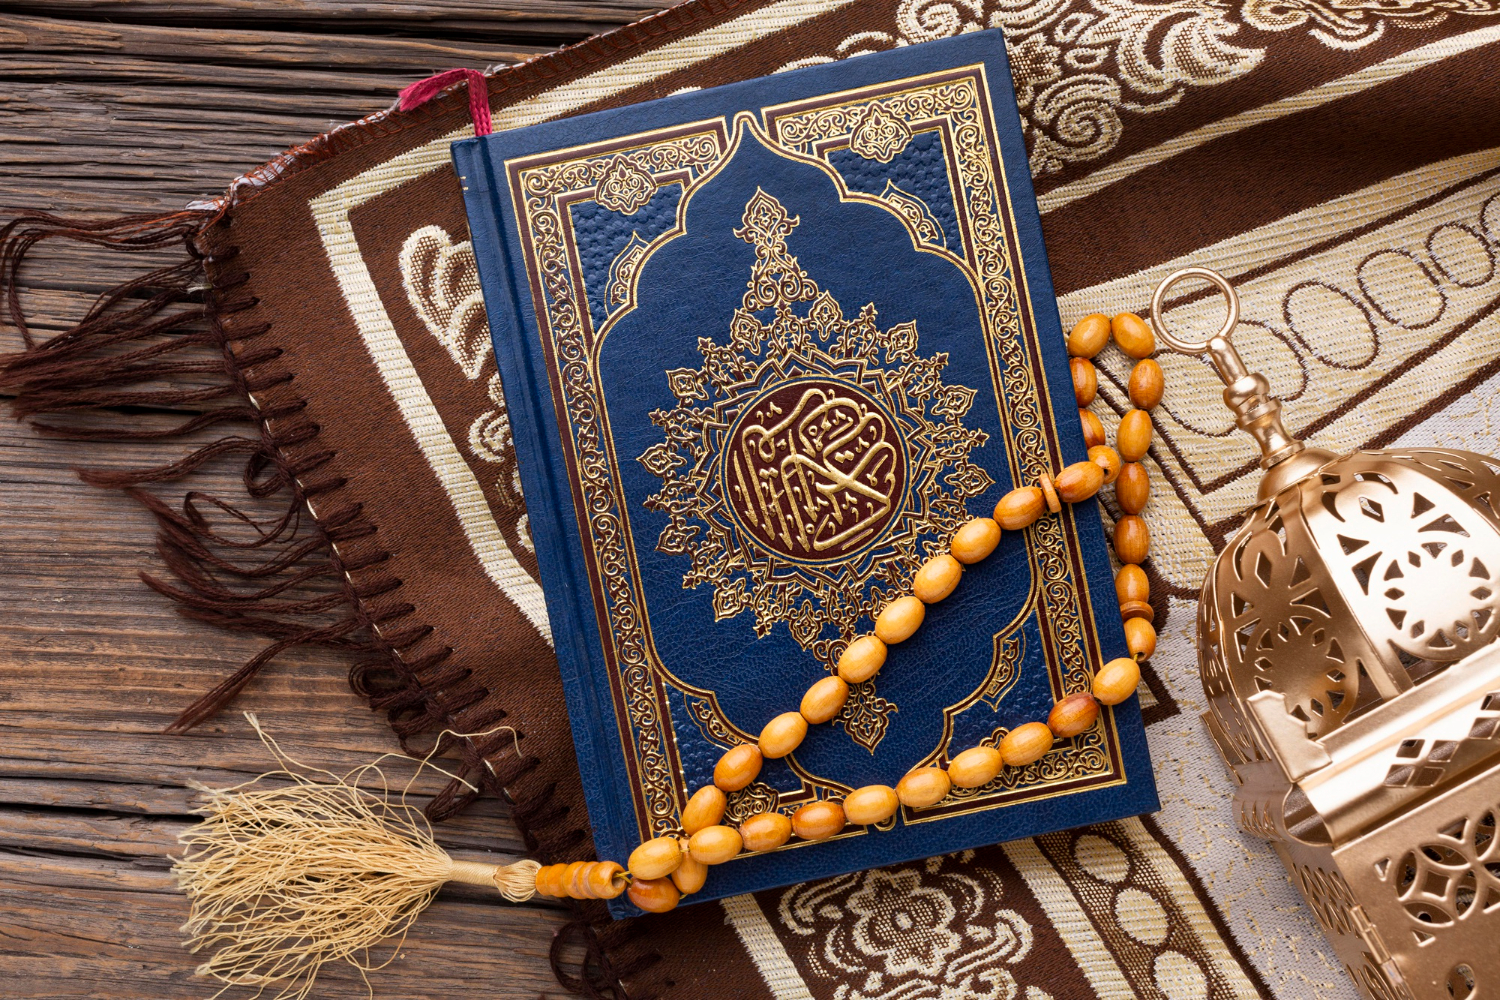 Tidak Hanya Nuzulul Quran, ini Beberapa Peristiwa Penting dalam Sejarah Islam yang Terjadi pada 17 Ramadhan